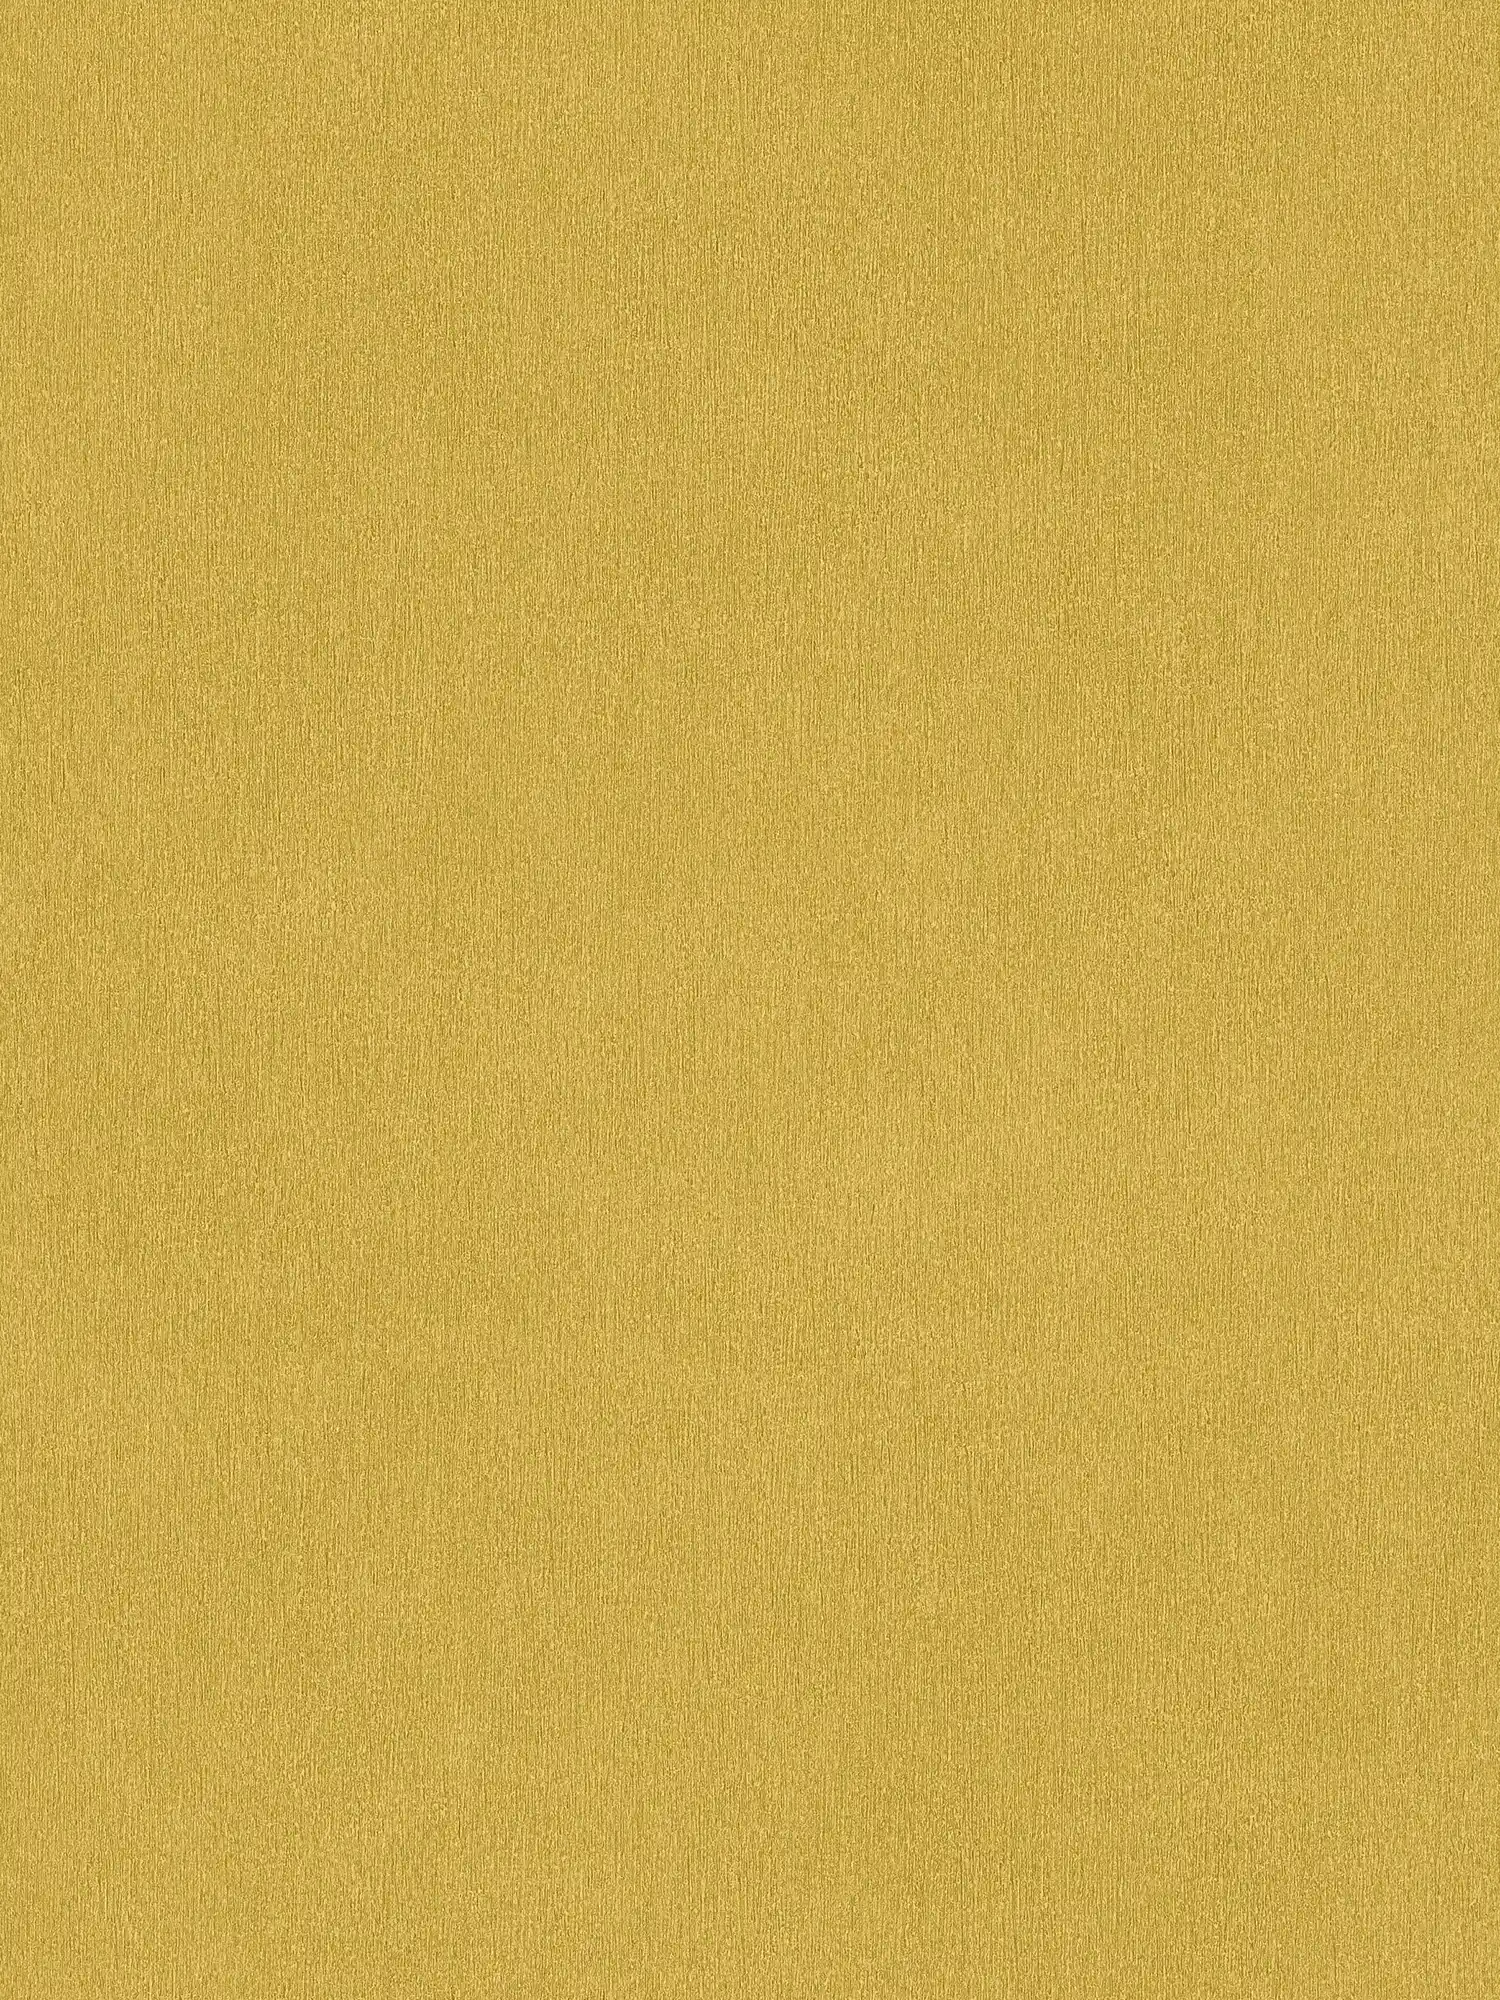 Gelbe Tapete einfarbig mit Farbstruktur, glatt & seidenmatt
